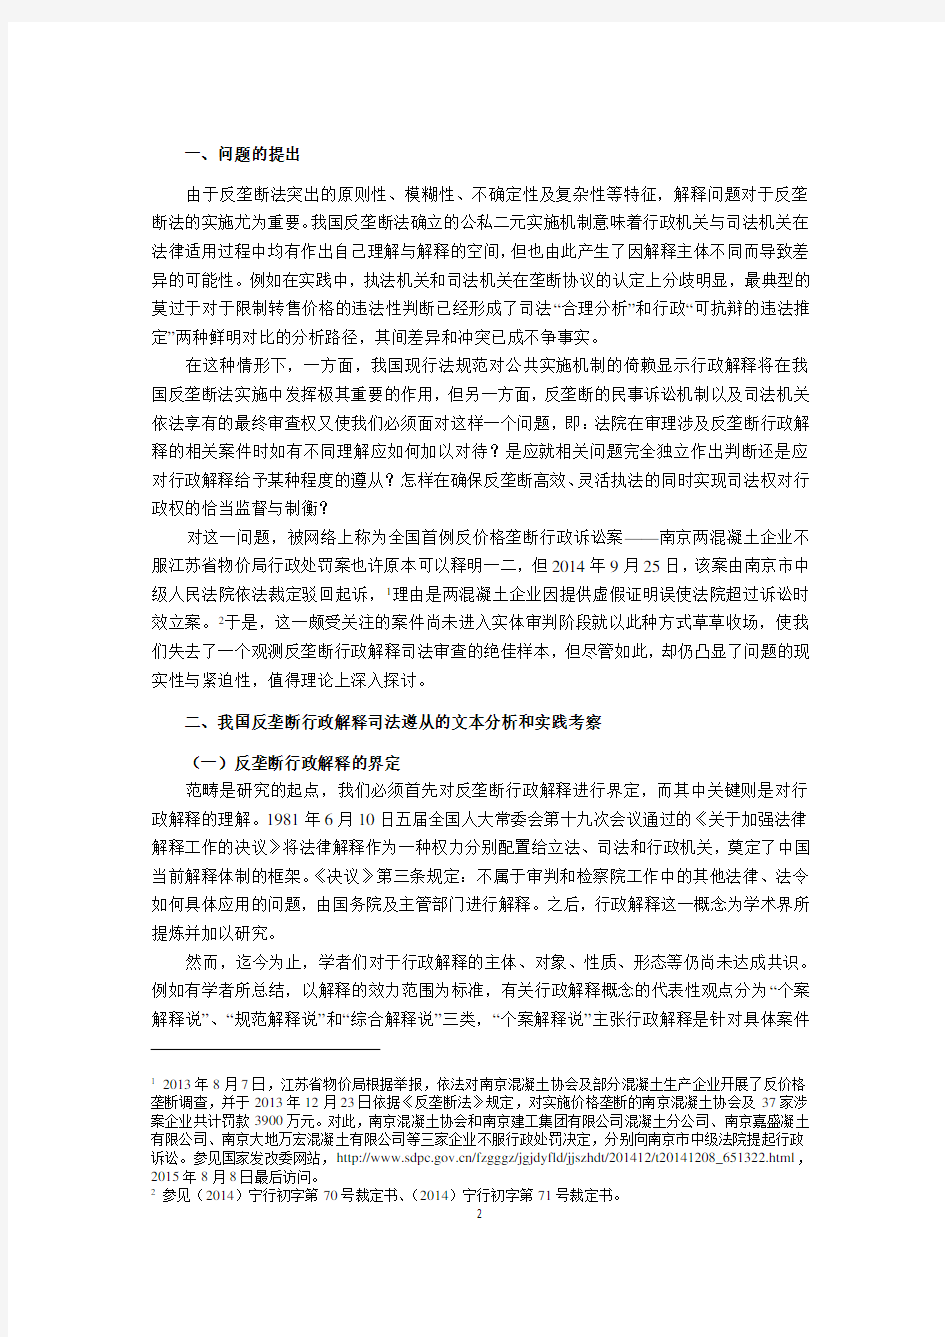 论反垄断行政解释的司法遵从-竞争法律与政策研究中心-上海交通大学